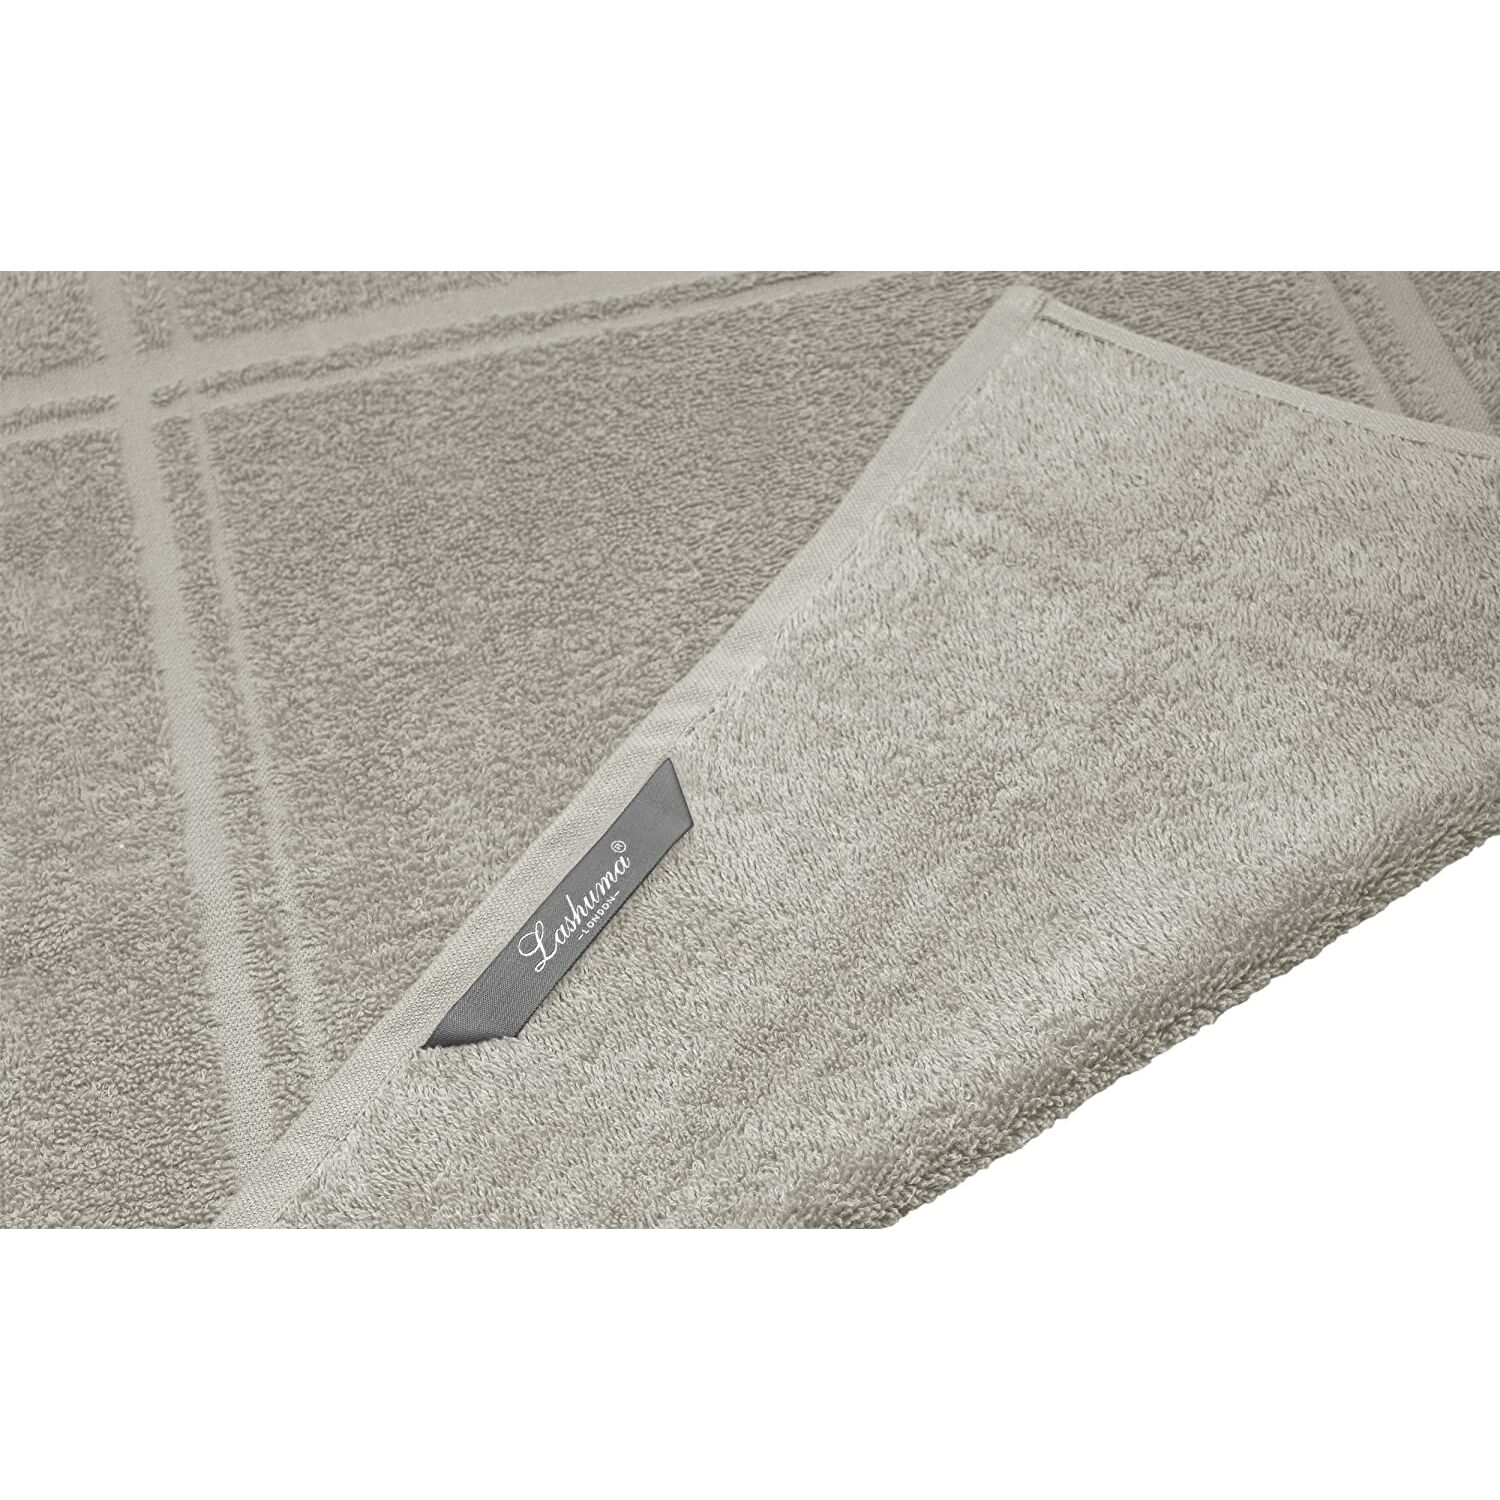 Küchentextilien :: Geschirrtücher :: Handtücher Set Grau - Kiesel,  Abtrocktücher für Hände 50x50 cm, Handtuch Serie: London